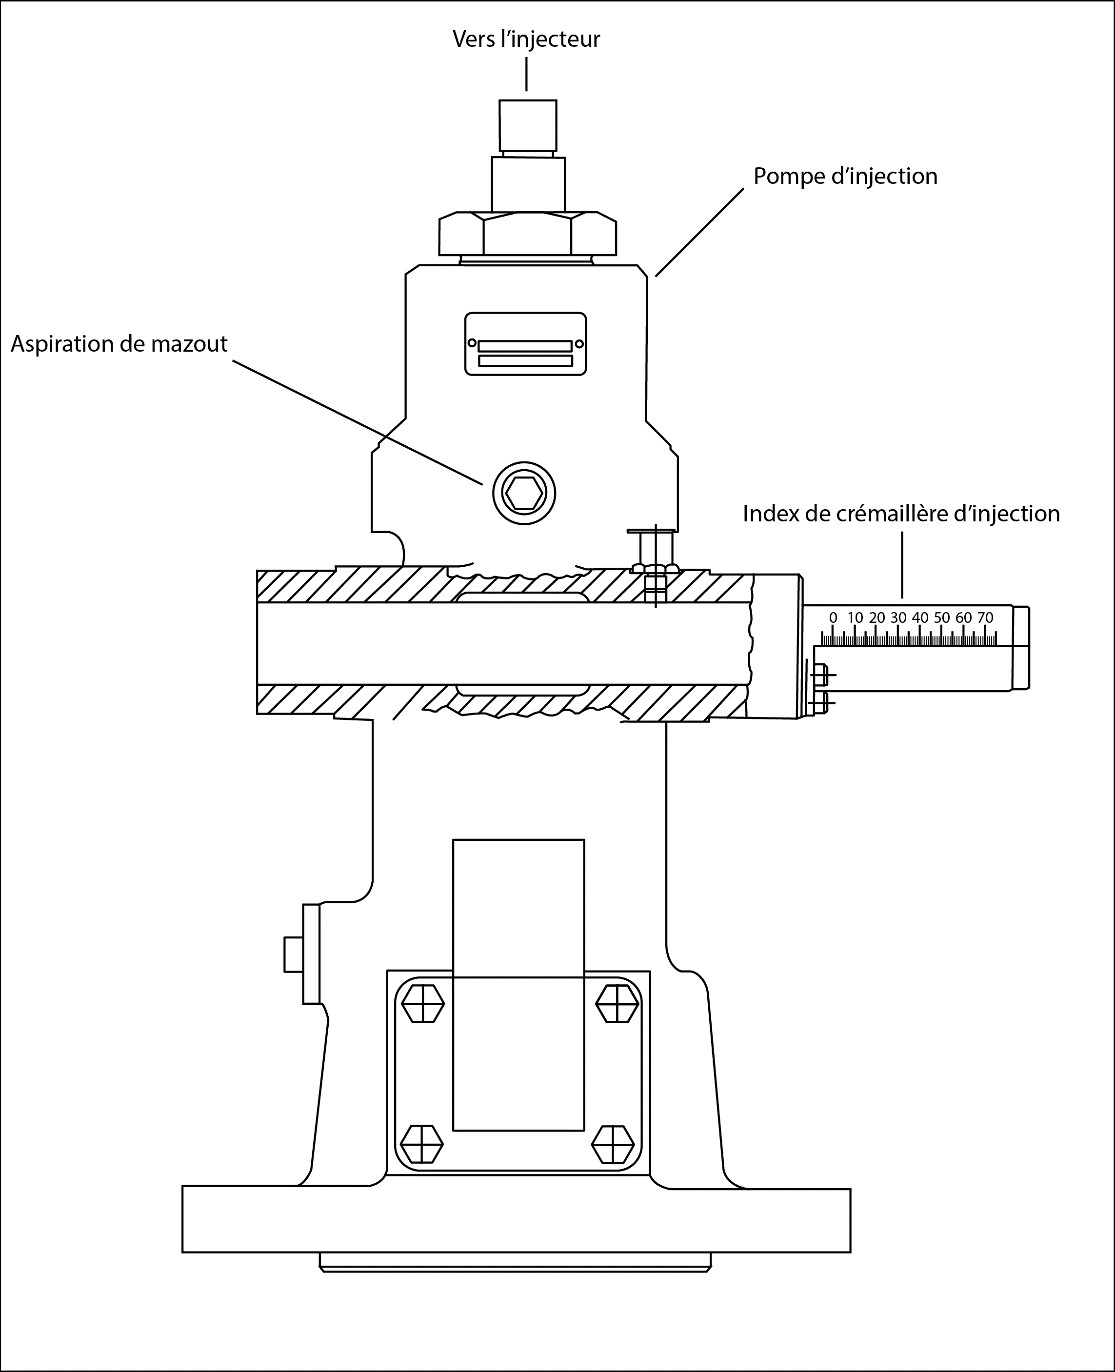 Diagramme de la pompe à injection de carburant du Tecumseh, qui montre l’index de crémaillère d’injection (Source : BST, d’après le diagramme du fabricant du moteur)